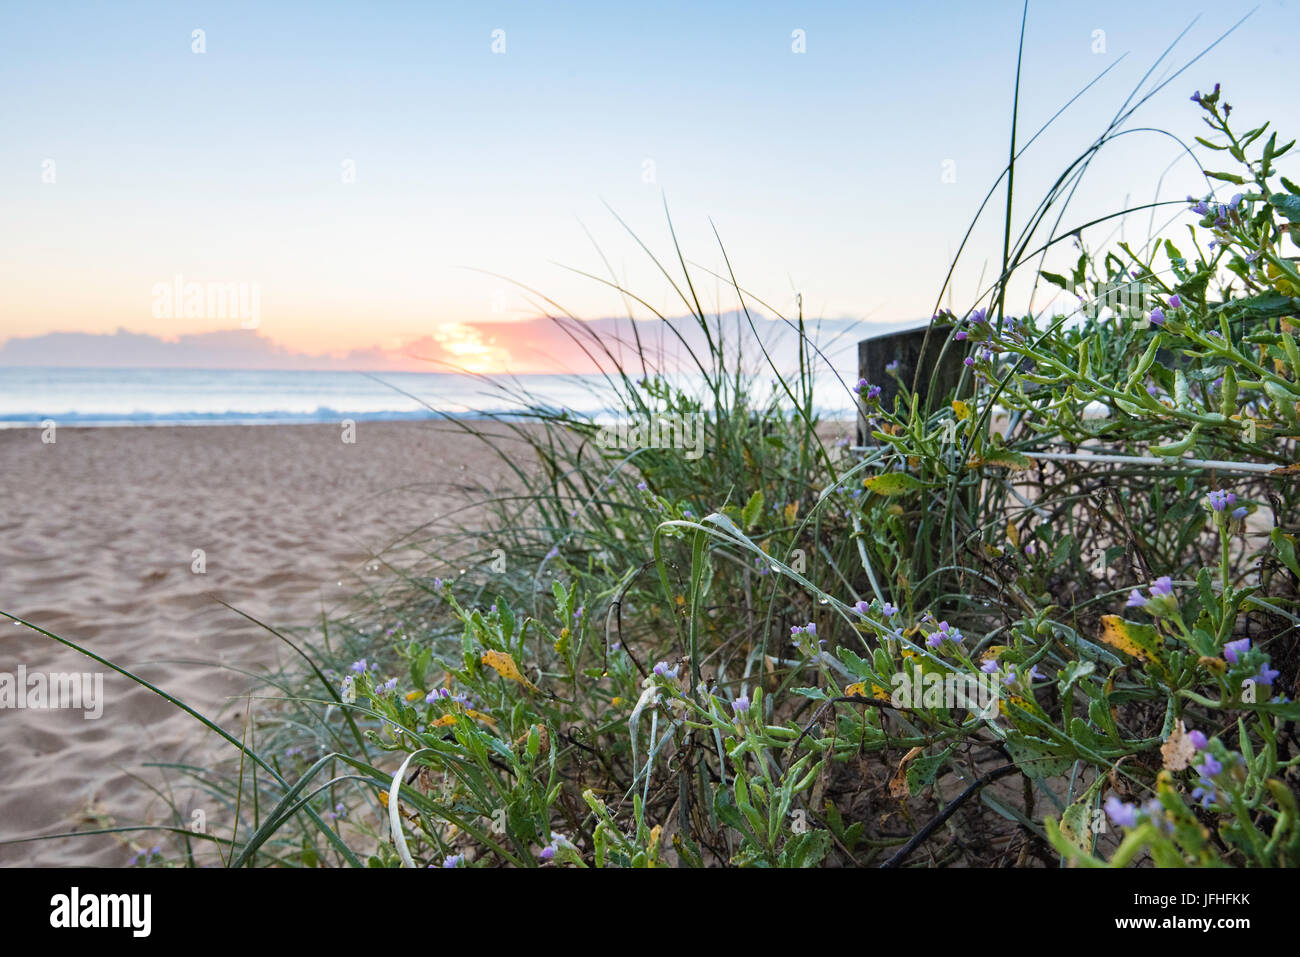 einheimischen australischen Pflanzen wachsen auf einer Sanddüne neben einem Path-Eintrag zu einem Strand an der Ostküste von Australien Stockfoto